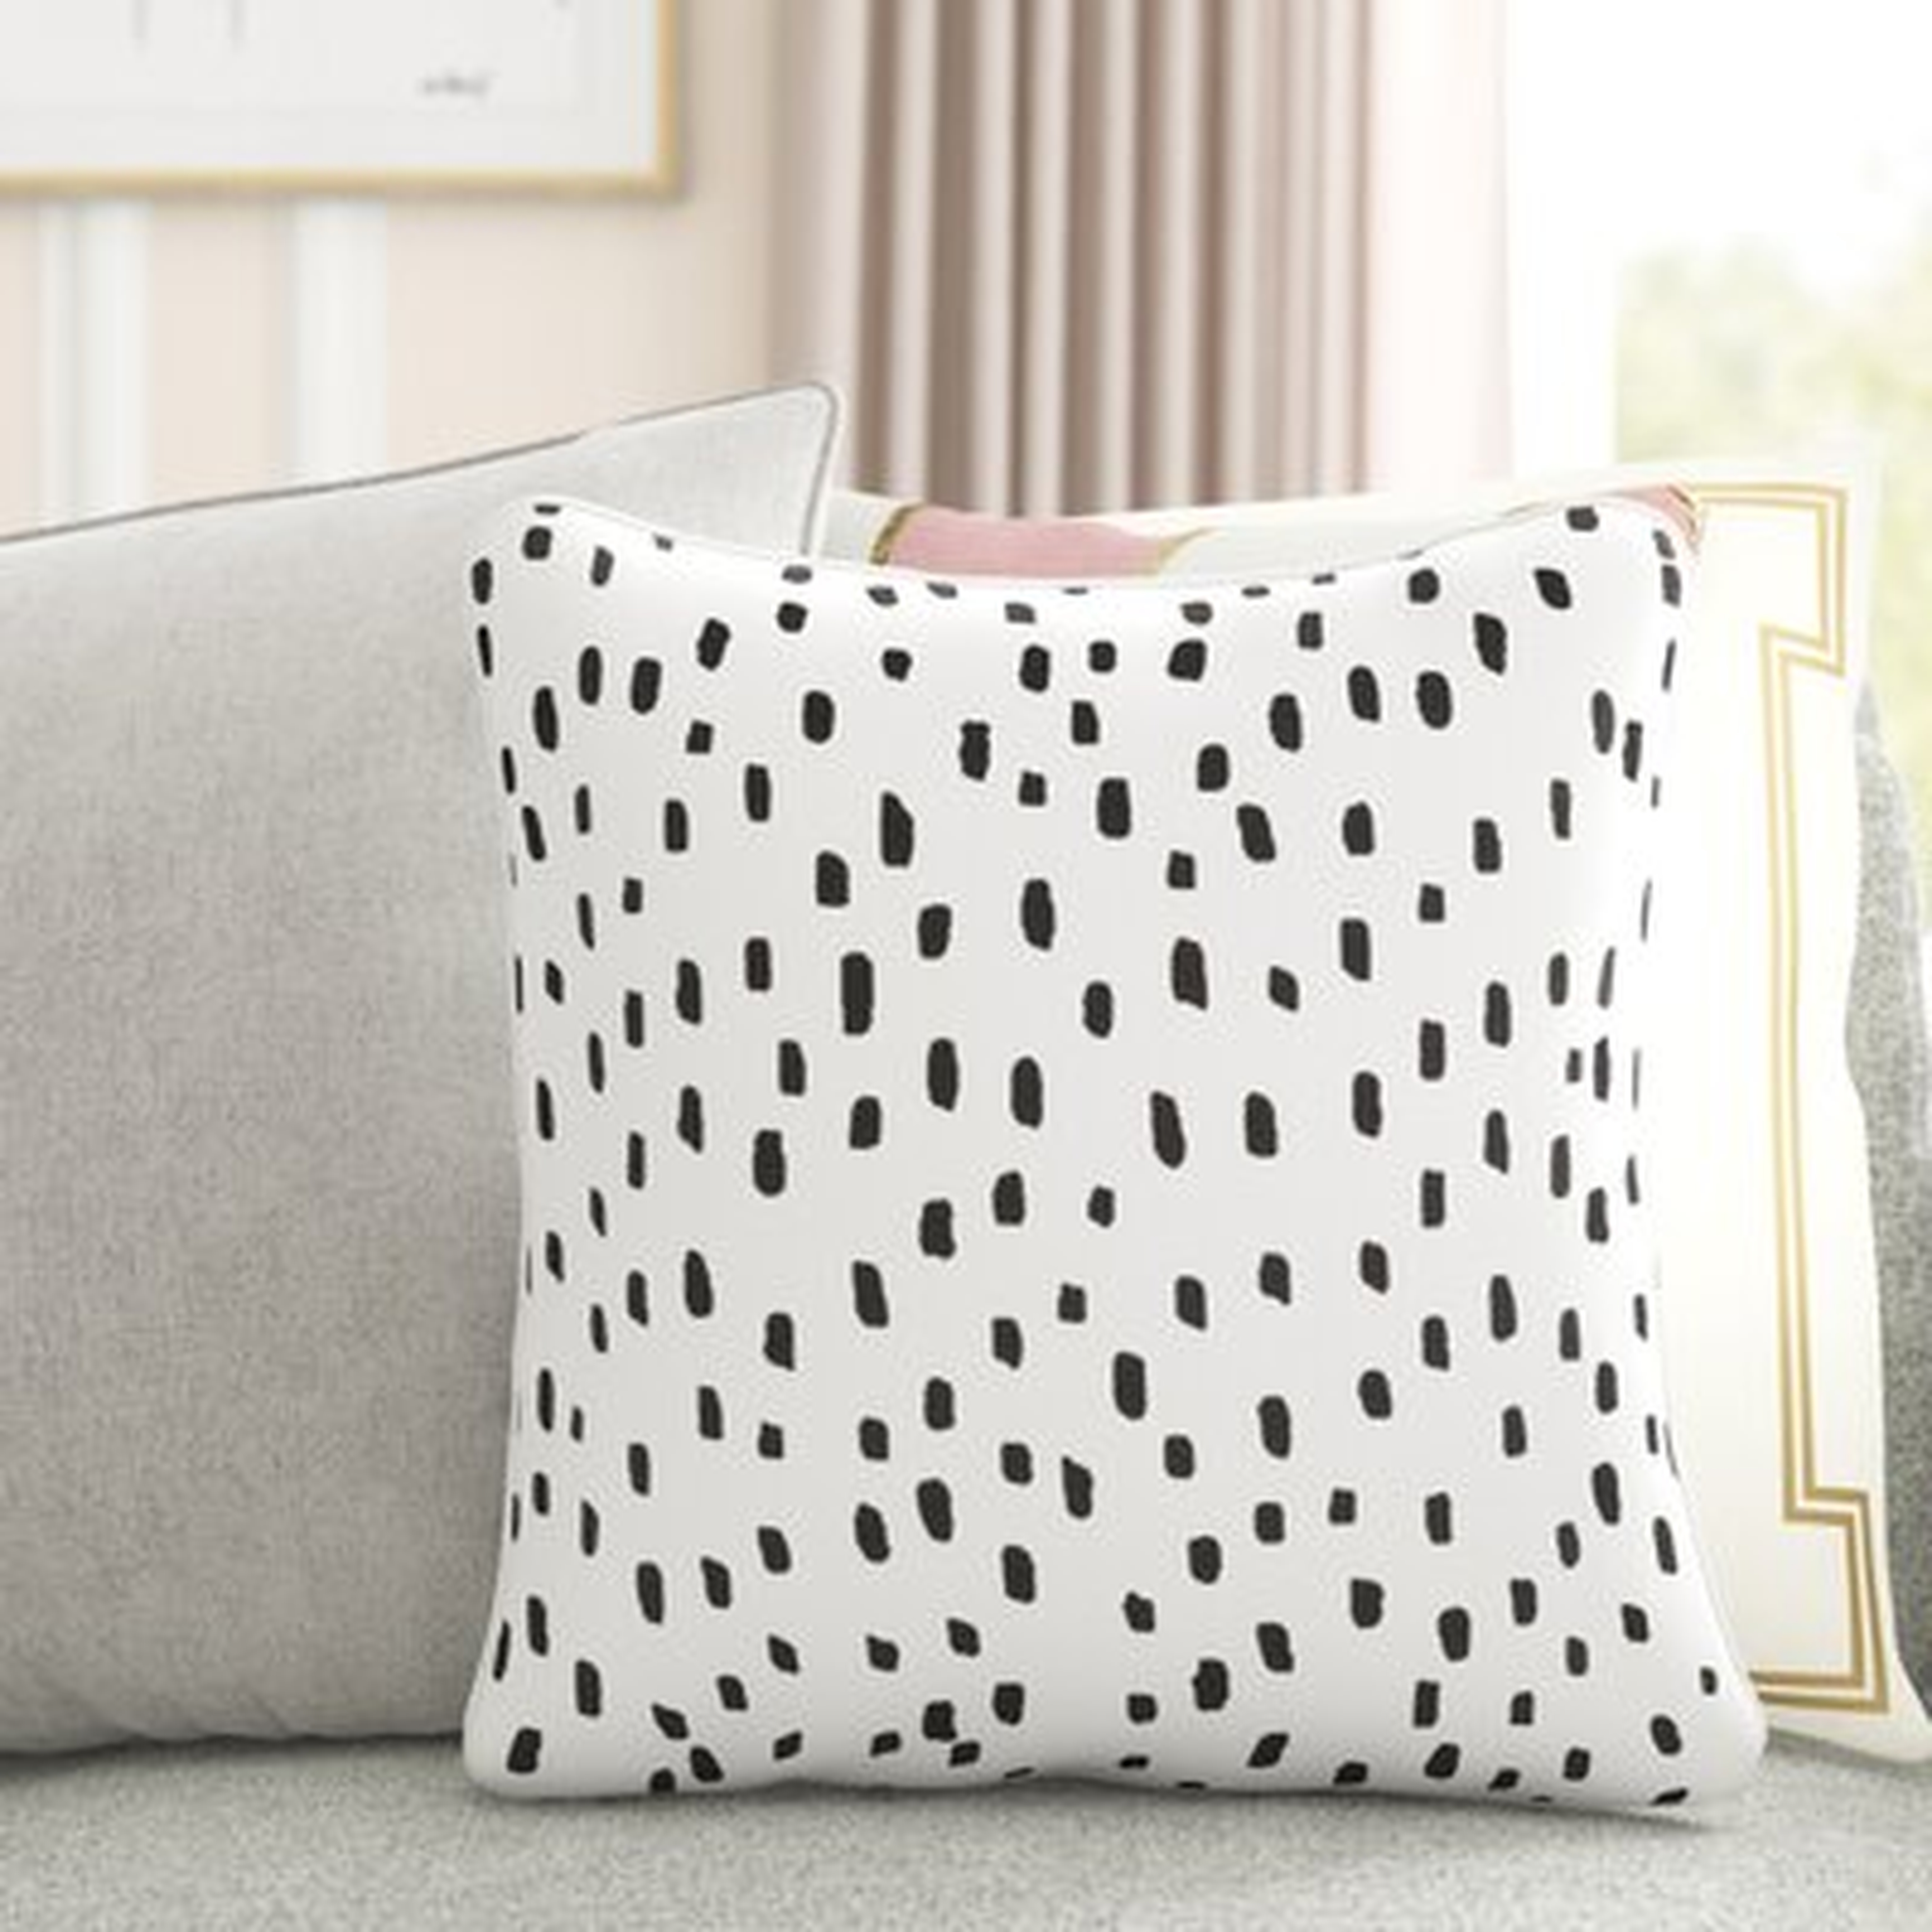 Glenwood Dalmatian Dot Cotton Animal Print Throw Pillow Cover - Wayfair